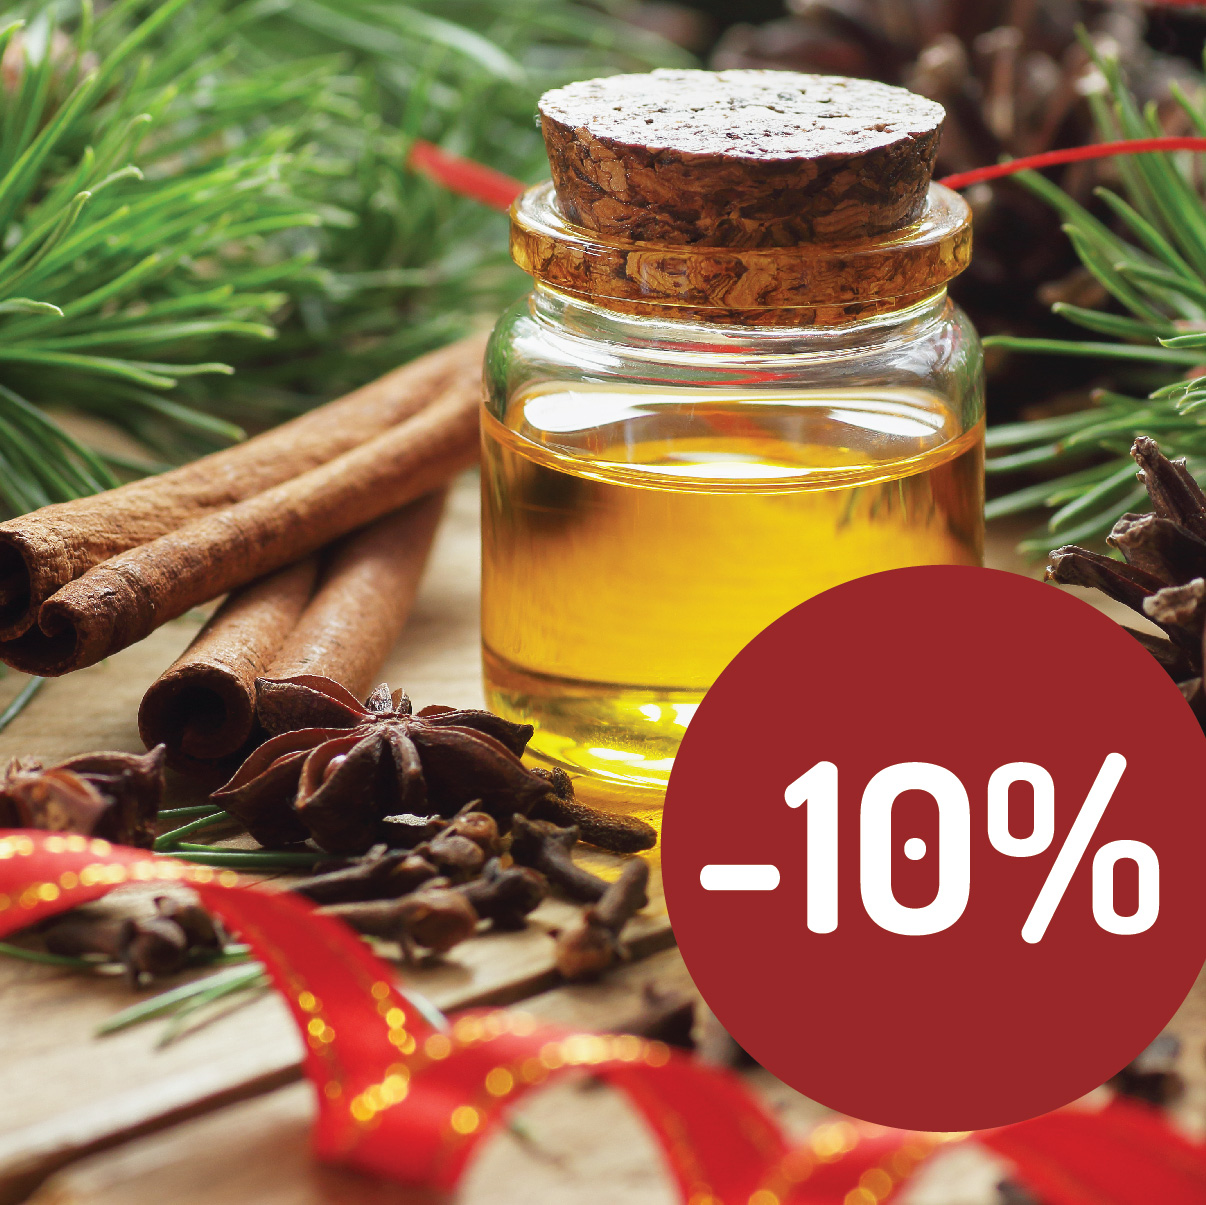 Štedré Vainoce v Handymade so zľavou -10% na všetky suroviny na tvorbu prírodnej kozmetiky s obrázkom oleja v sklenenej fľaške medzi ihličím a červenou stužkou či sušenými bylinkami.